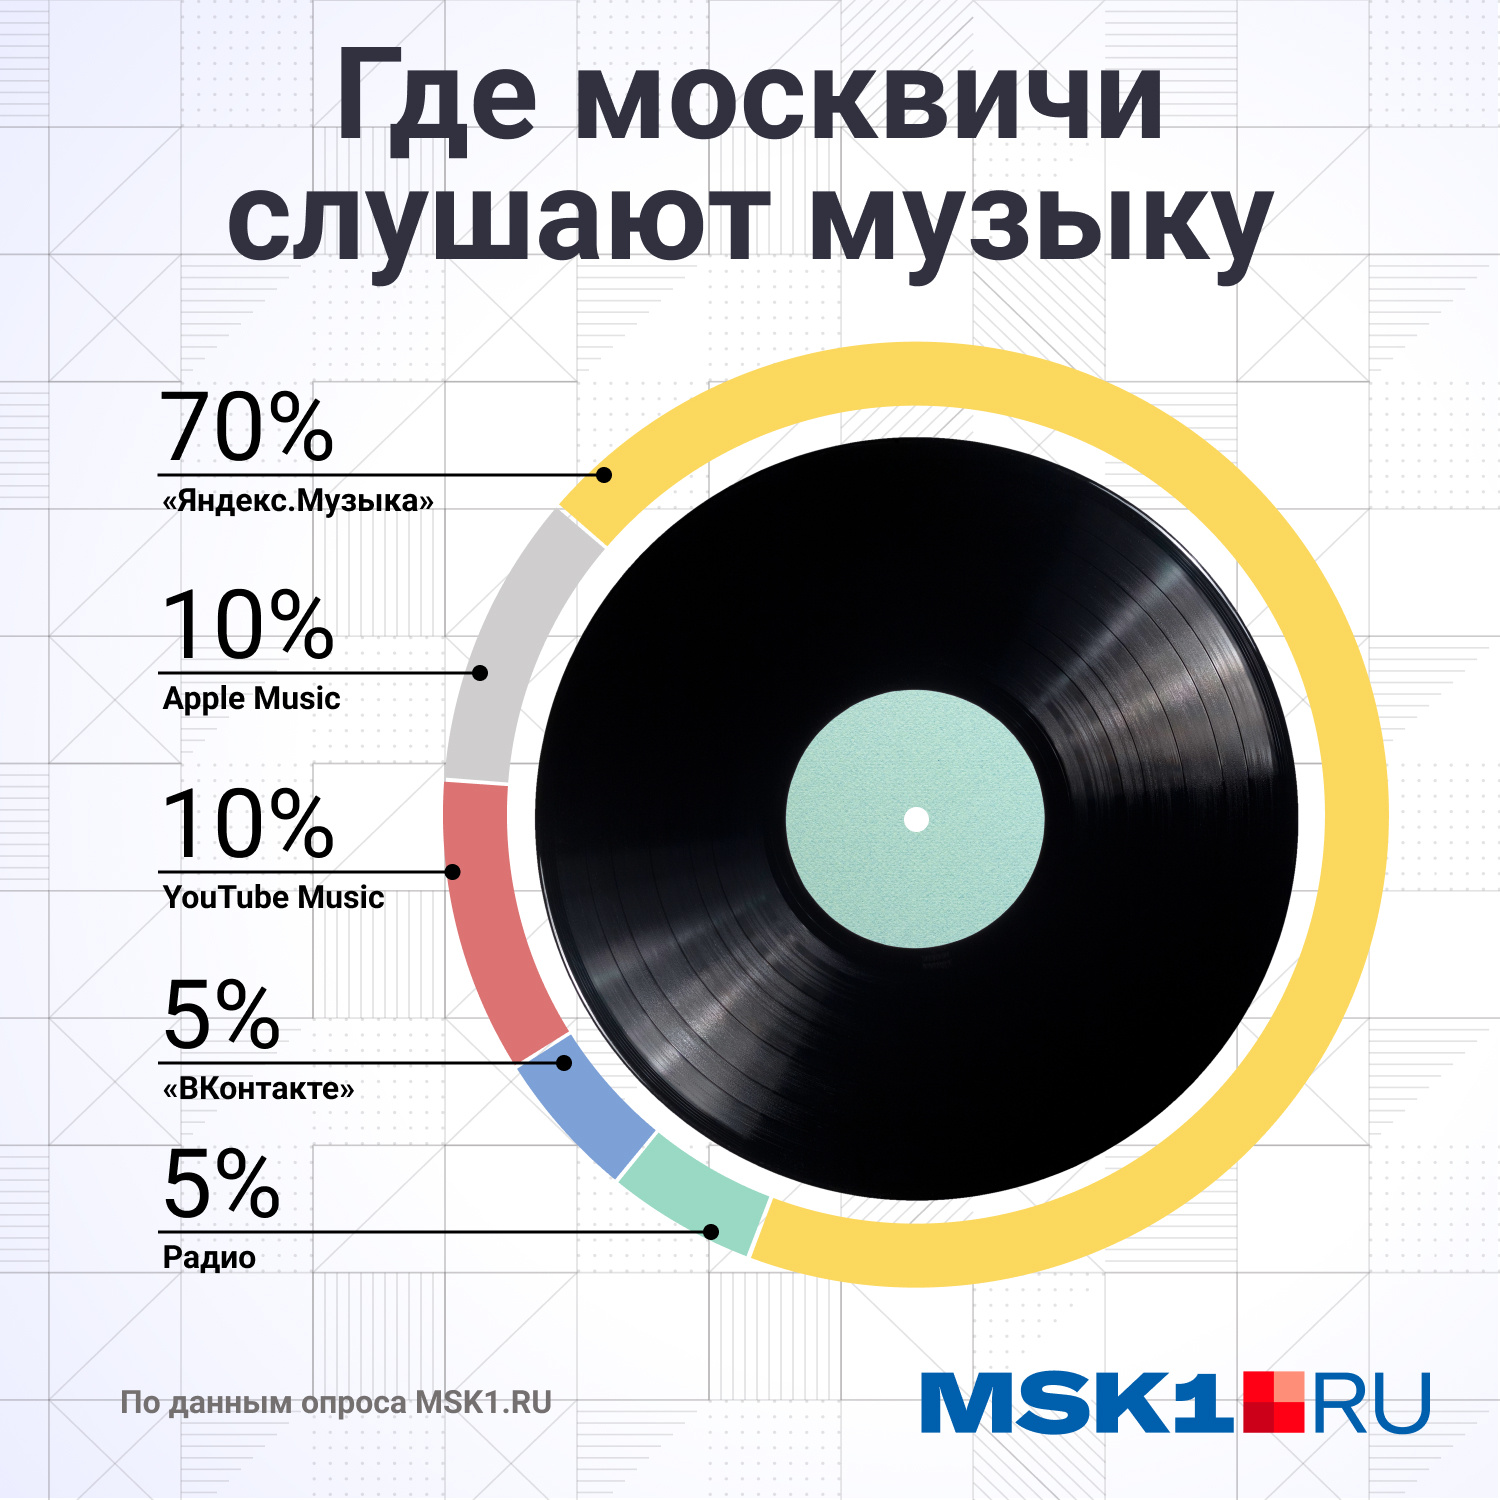 Большинство опрошенных предпочитает «Яндекс.Музыку»